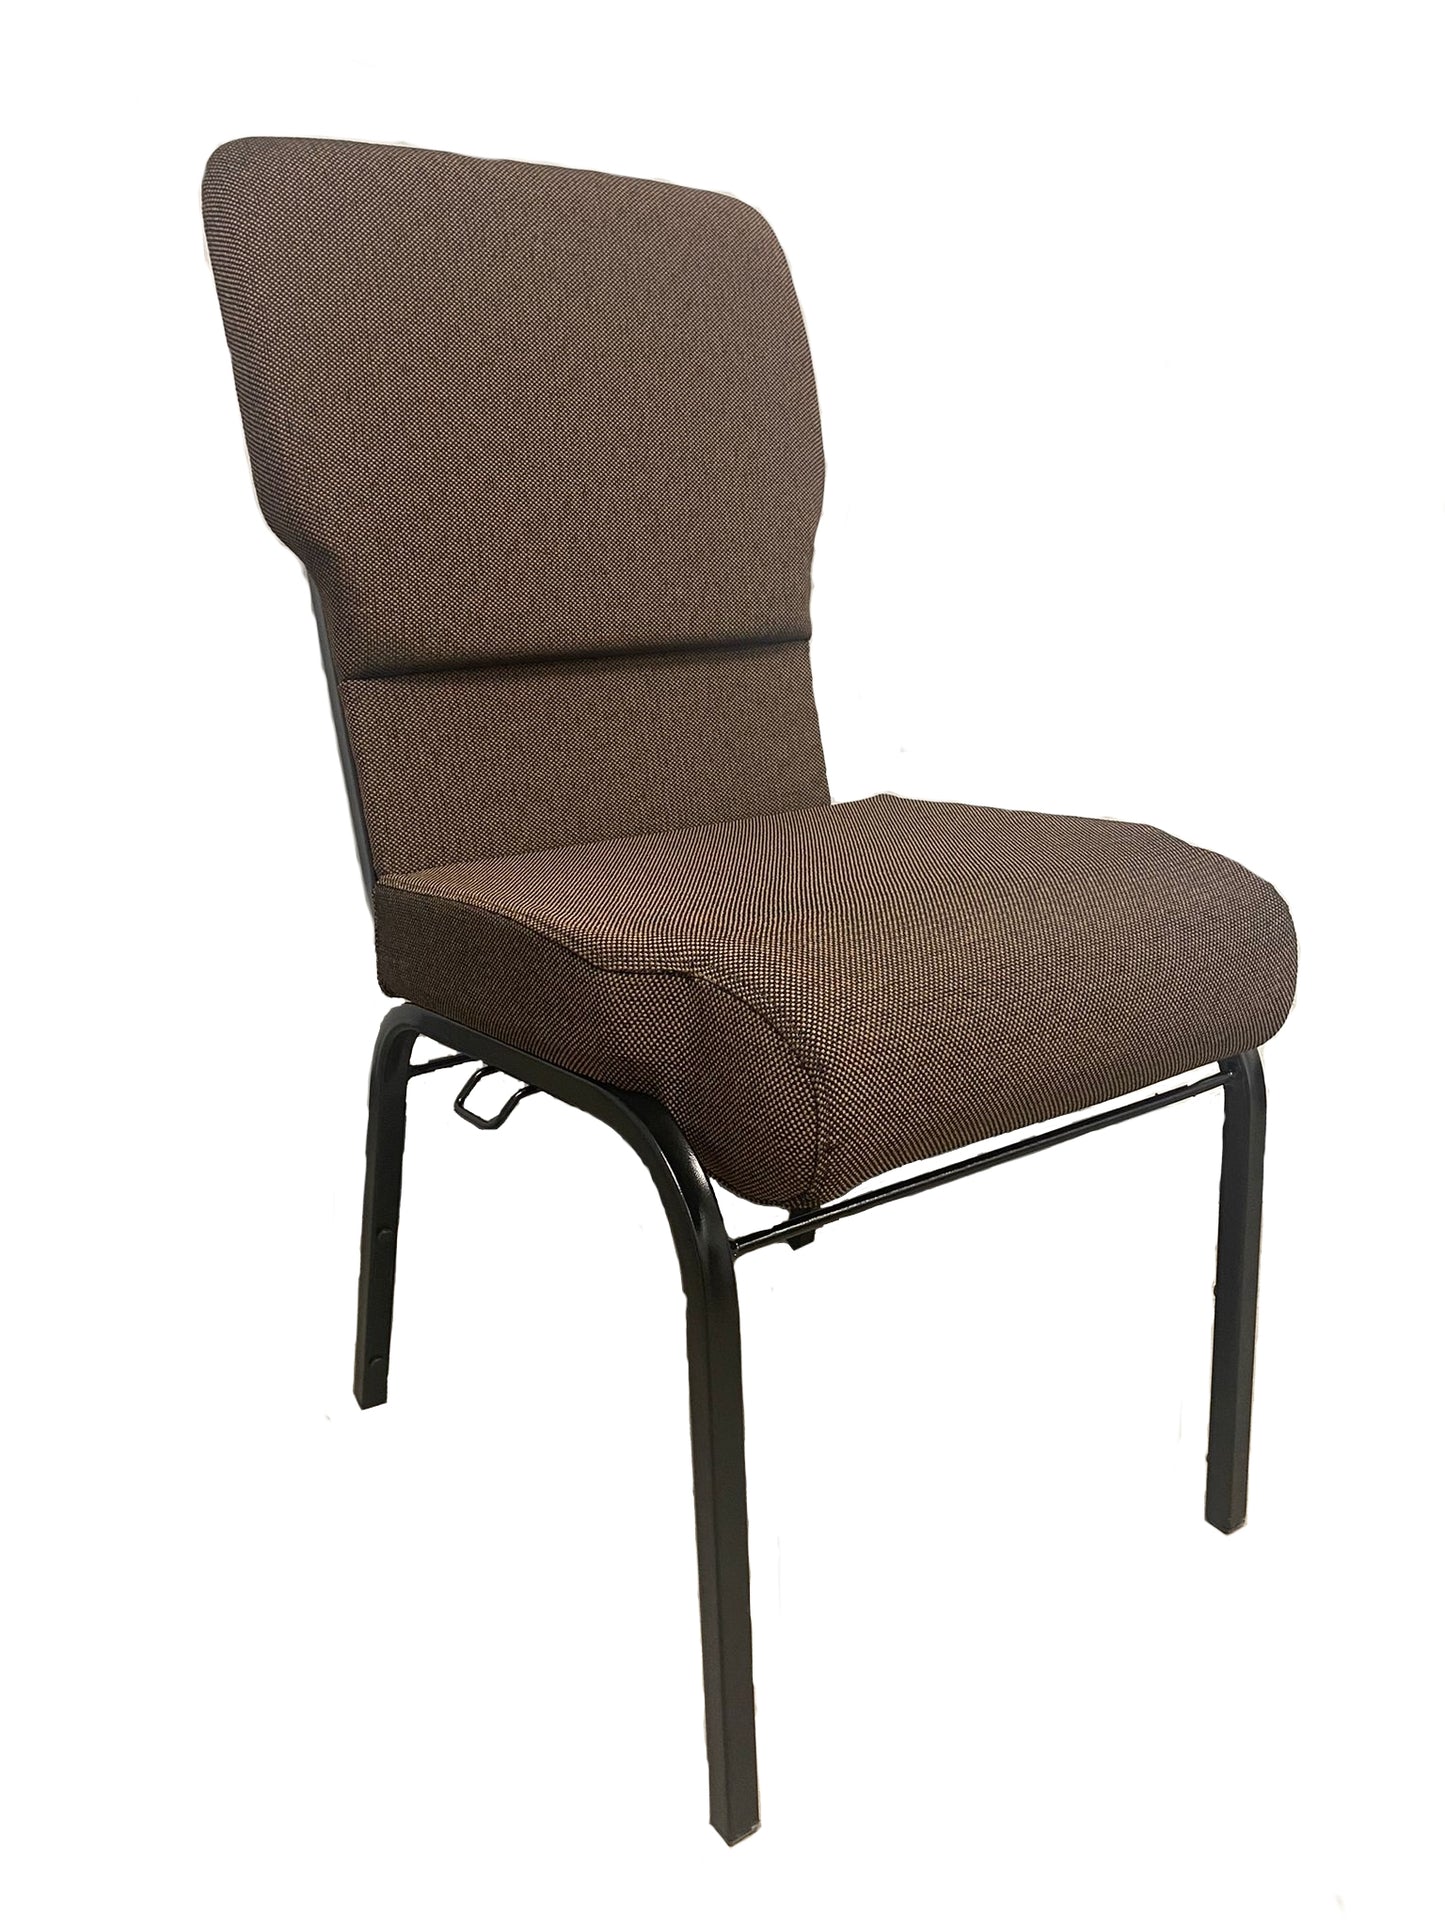 Bliss Church Chair 17.5"